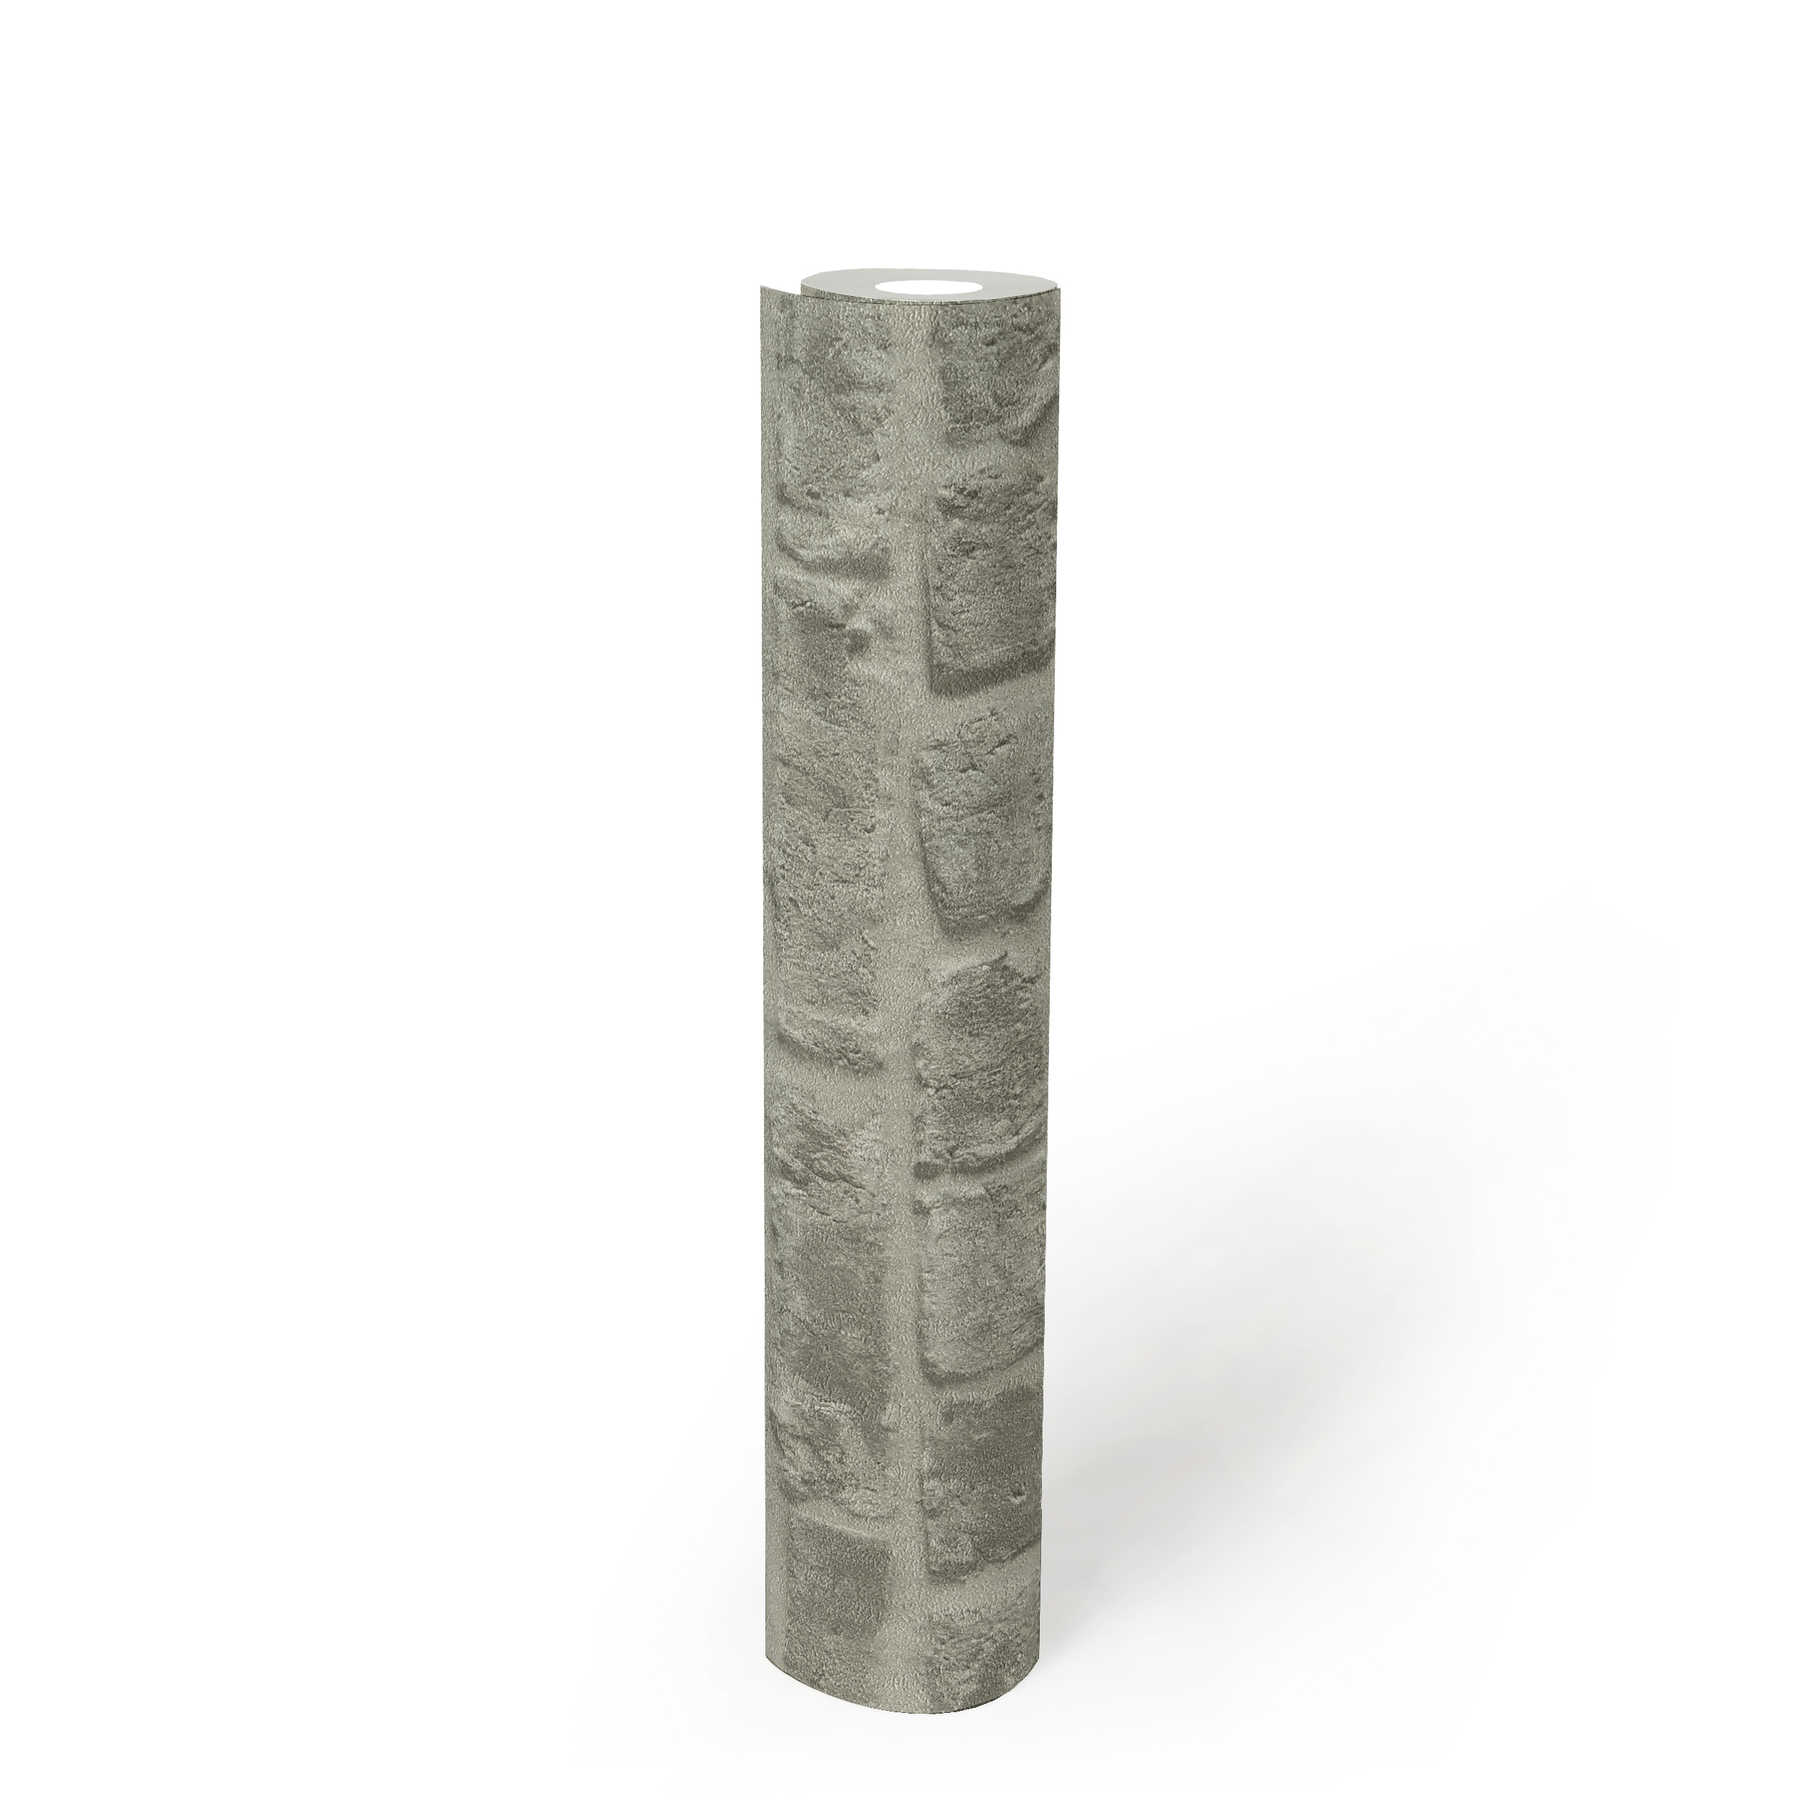             Papel pintado aspecto piedra gris oscuro mampostería de ladrillo - gris
        